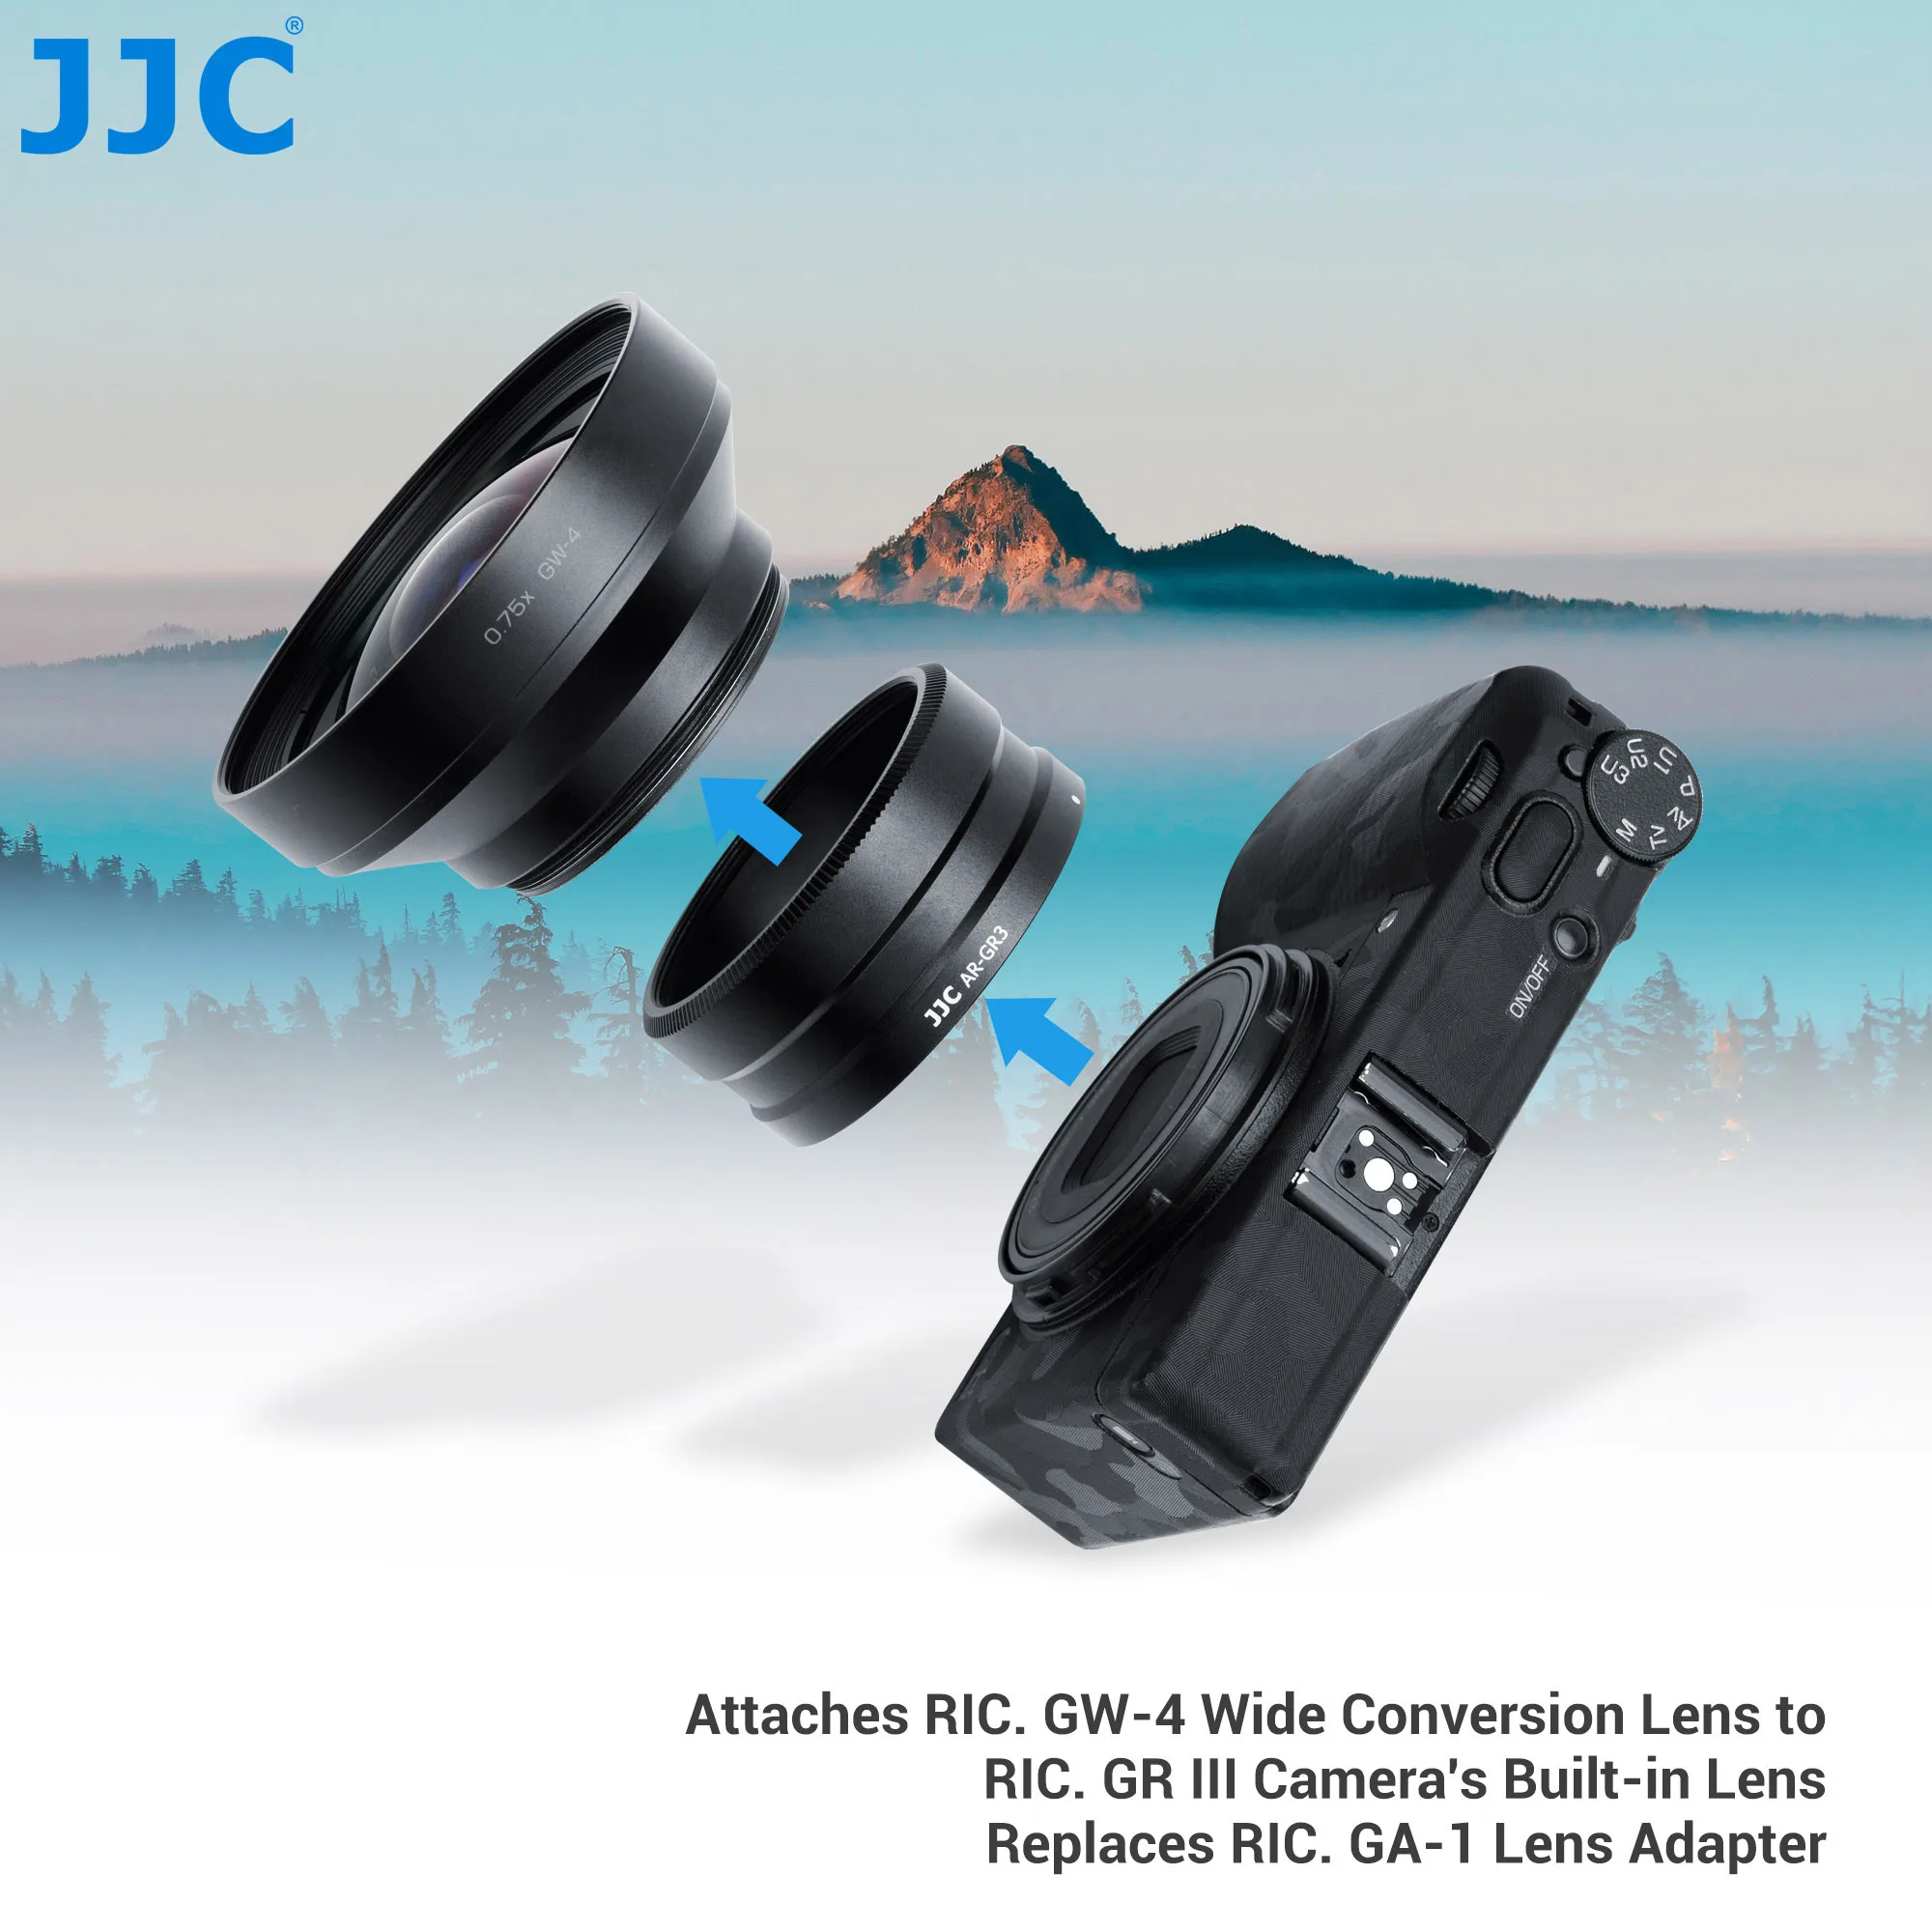 リコーg riiiデジタルカメラ用アダプター,GW-4 21mm変換レンズ用,リコーGA-1レンズアダプターの交換